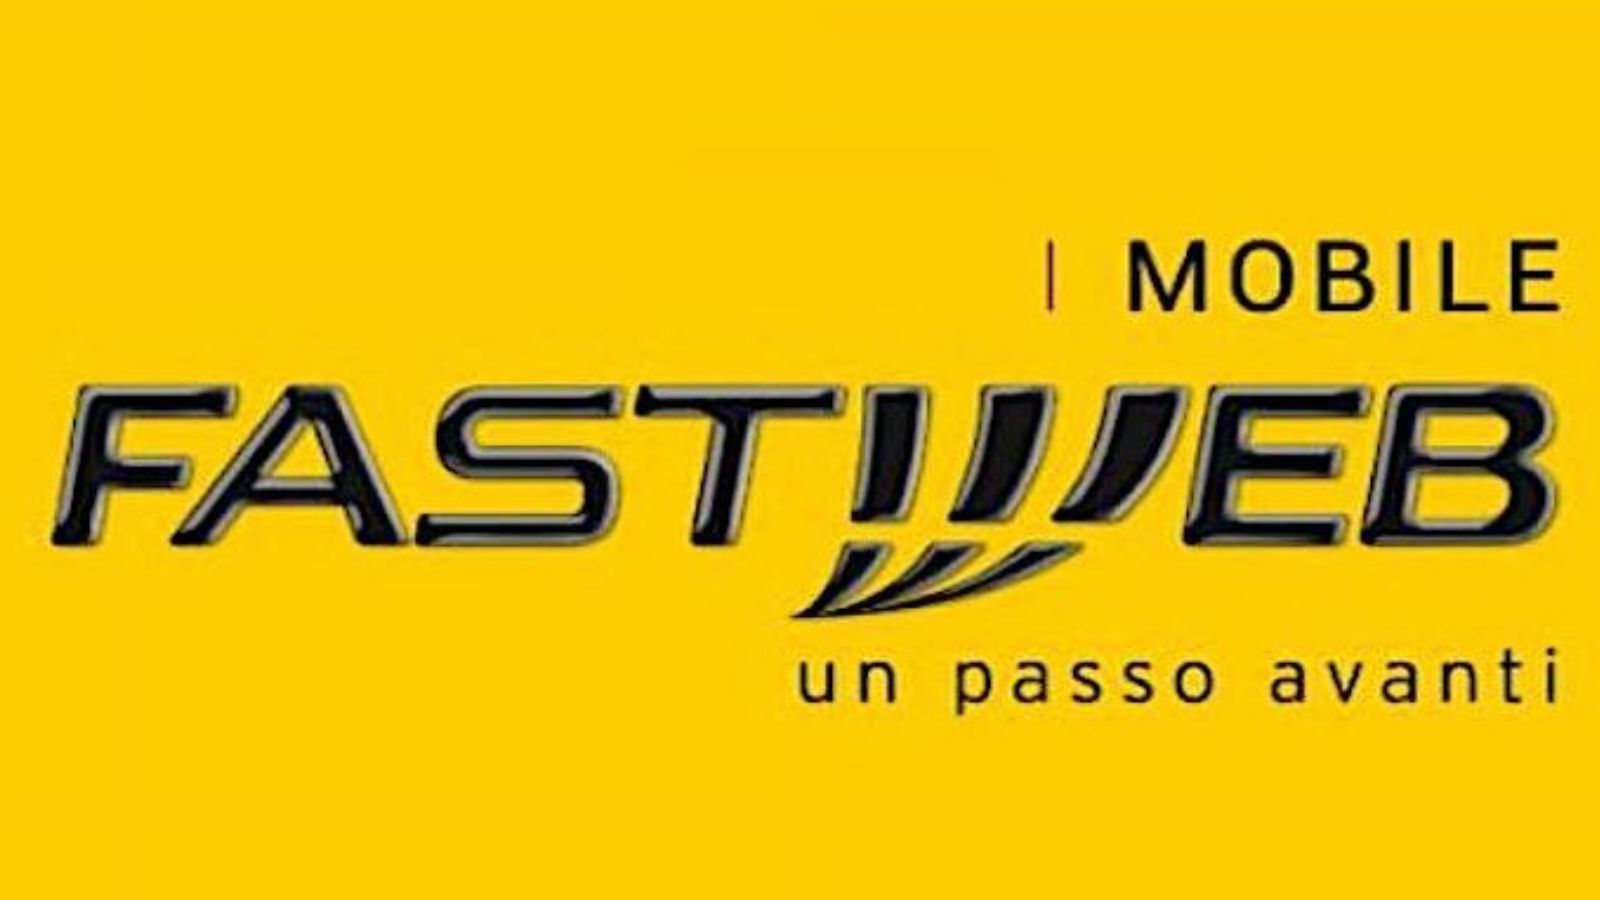 Fastweb Mobile batosta aumenti 